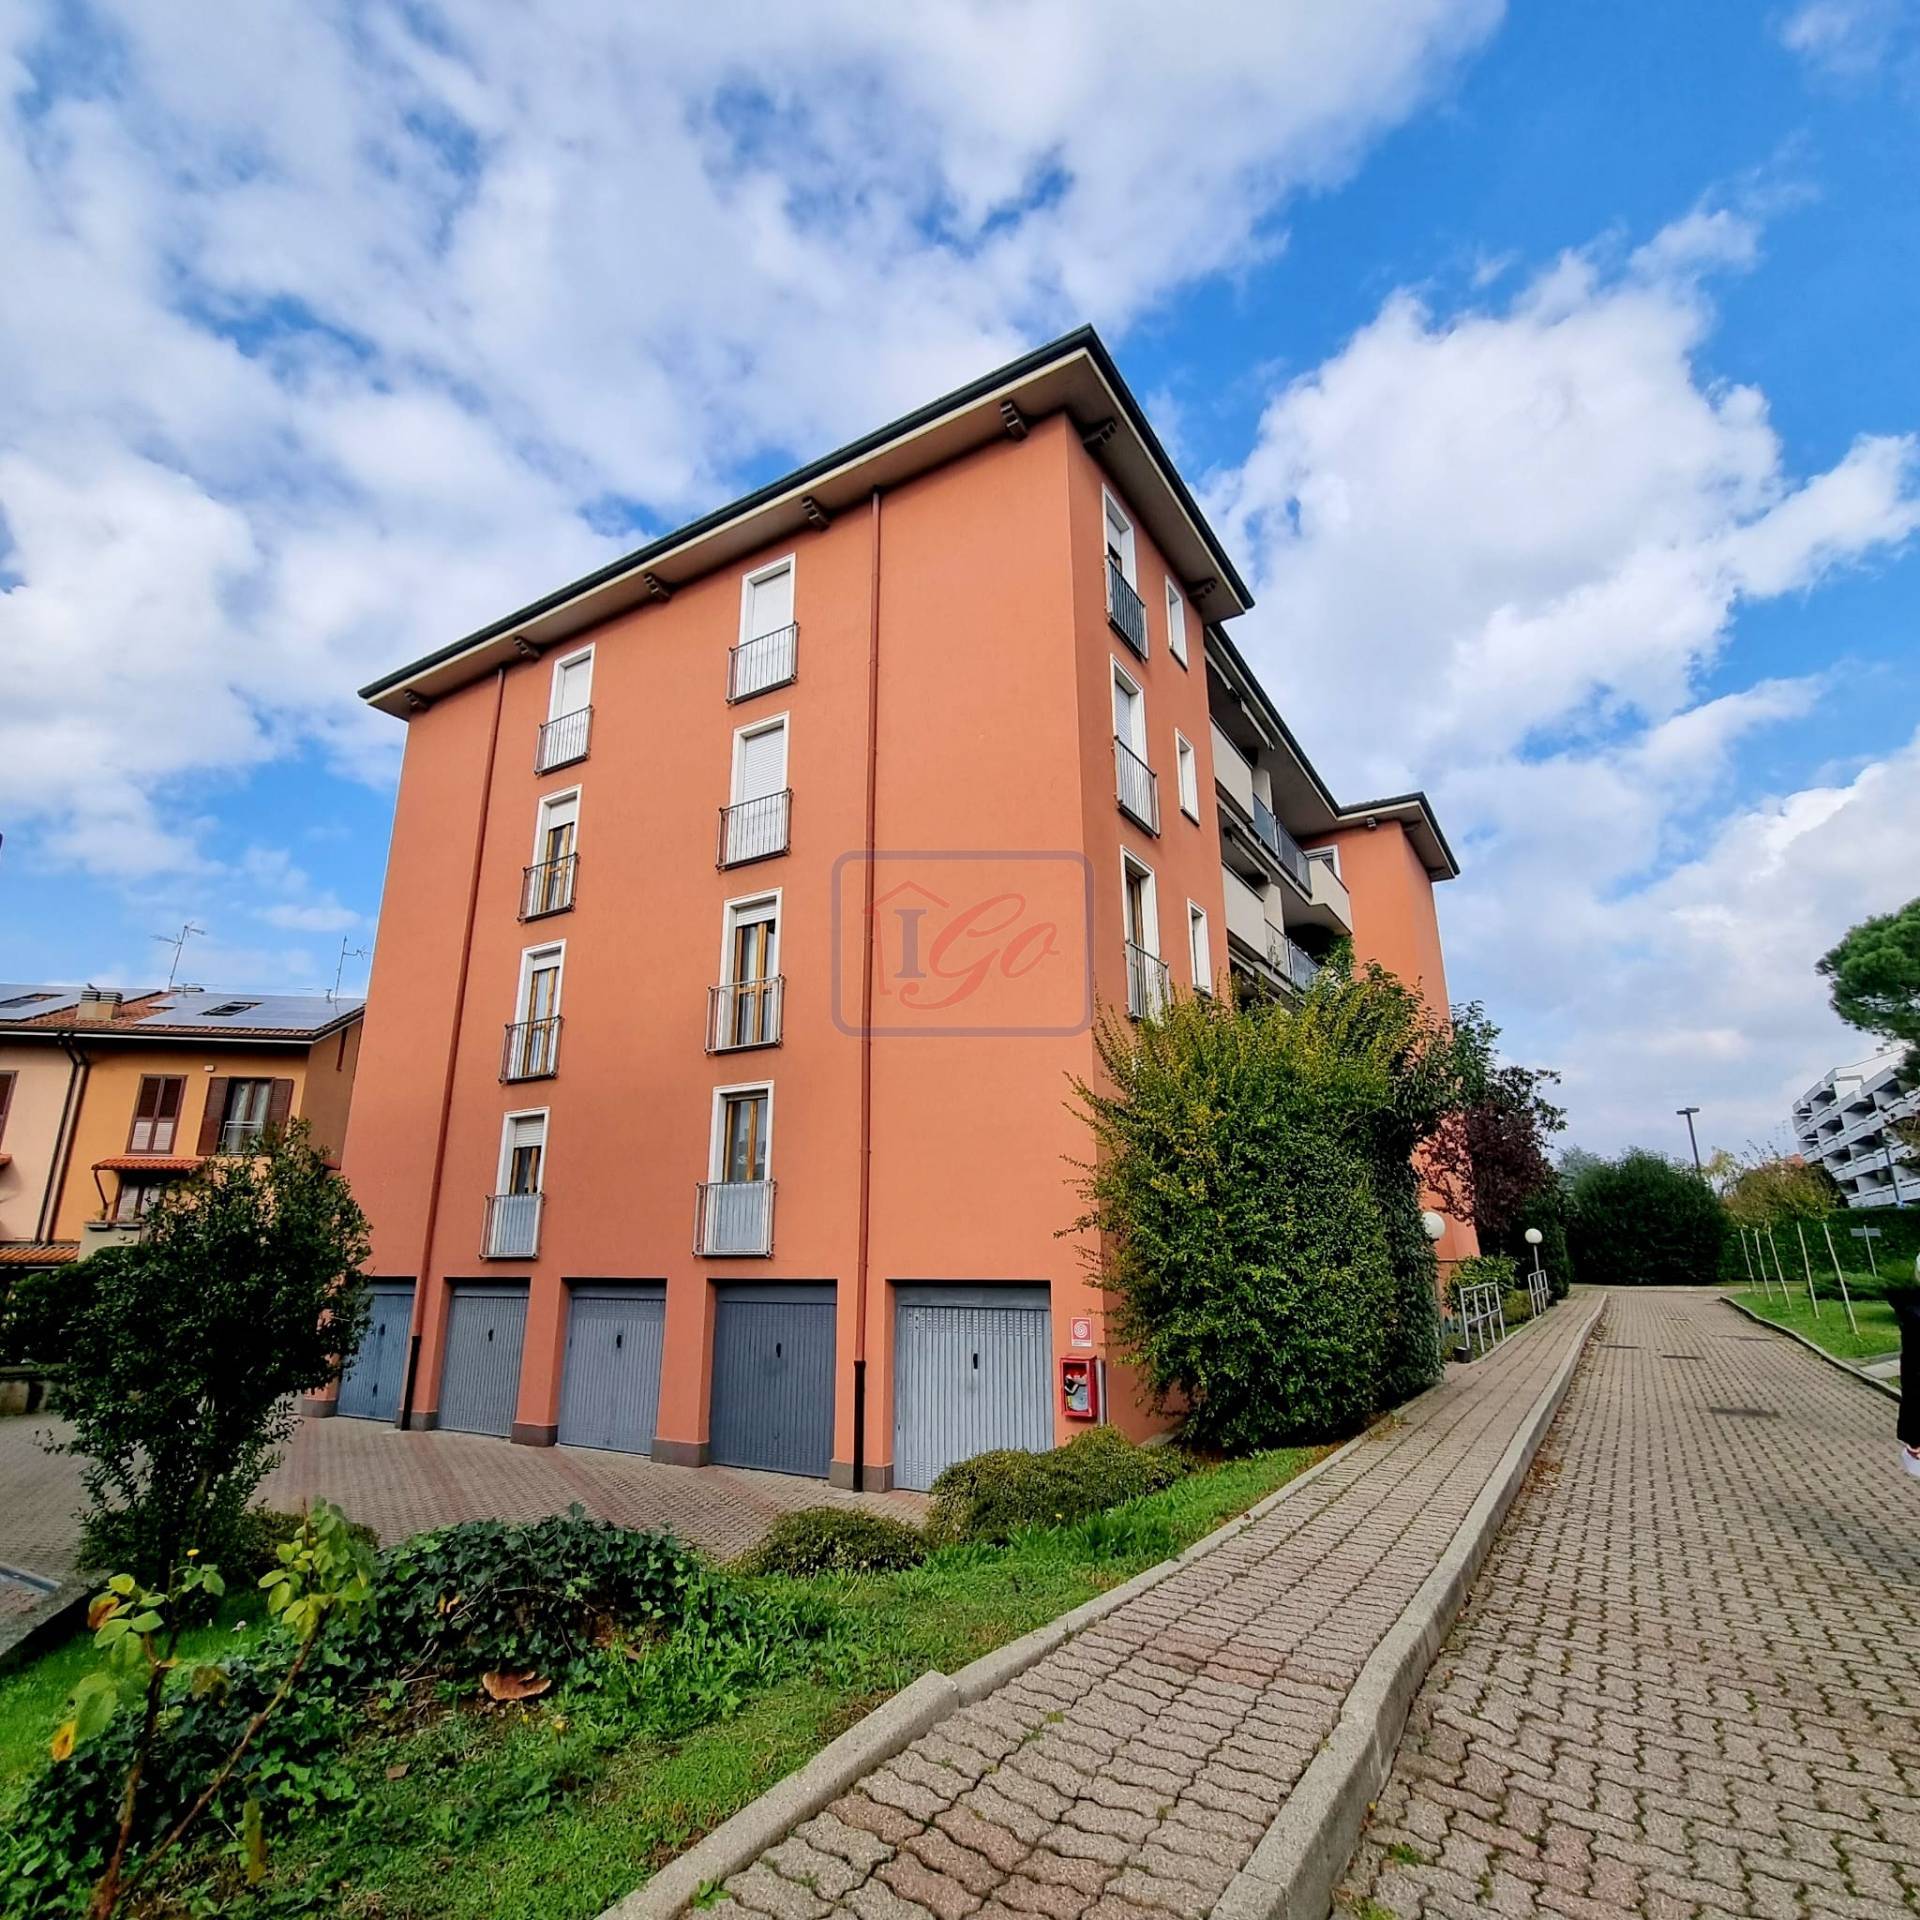 Appartamento in vendita a Trezzo sull'Adda, 3 locali, prezzo € 165.000 | PortaleAgenzieImmobiliari.it